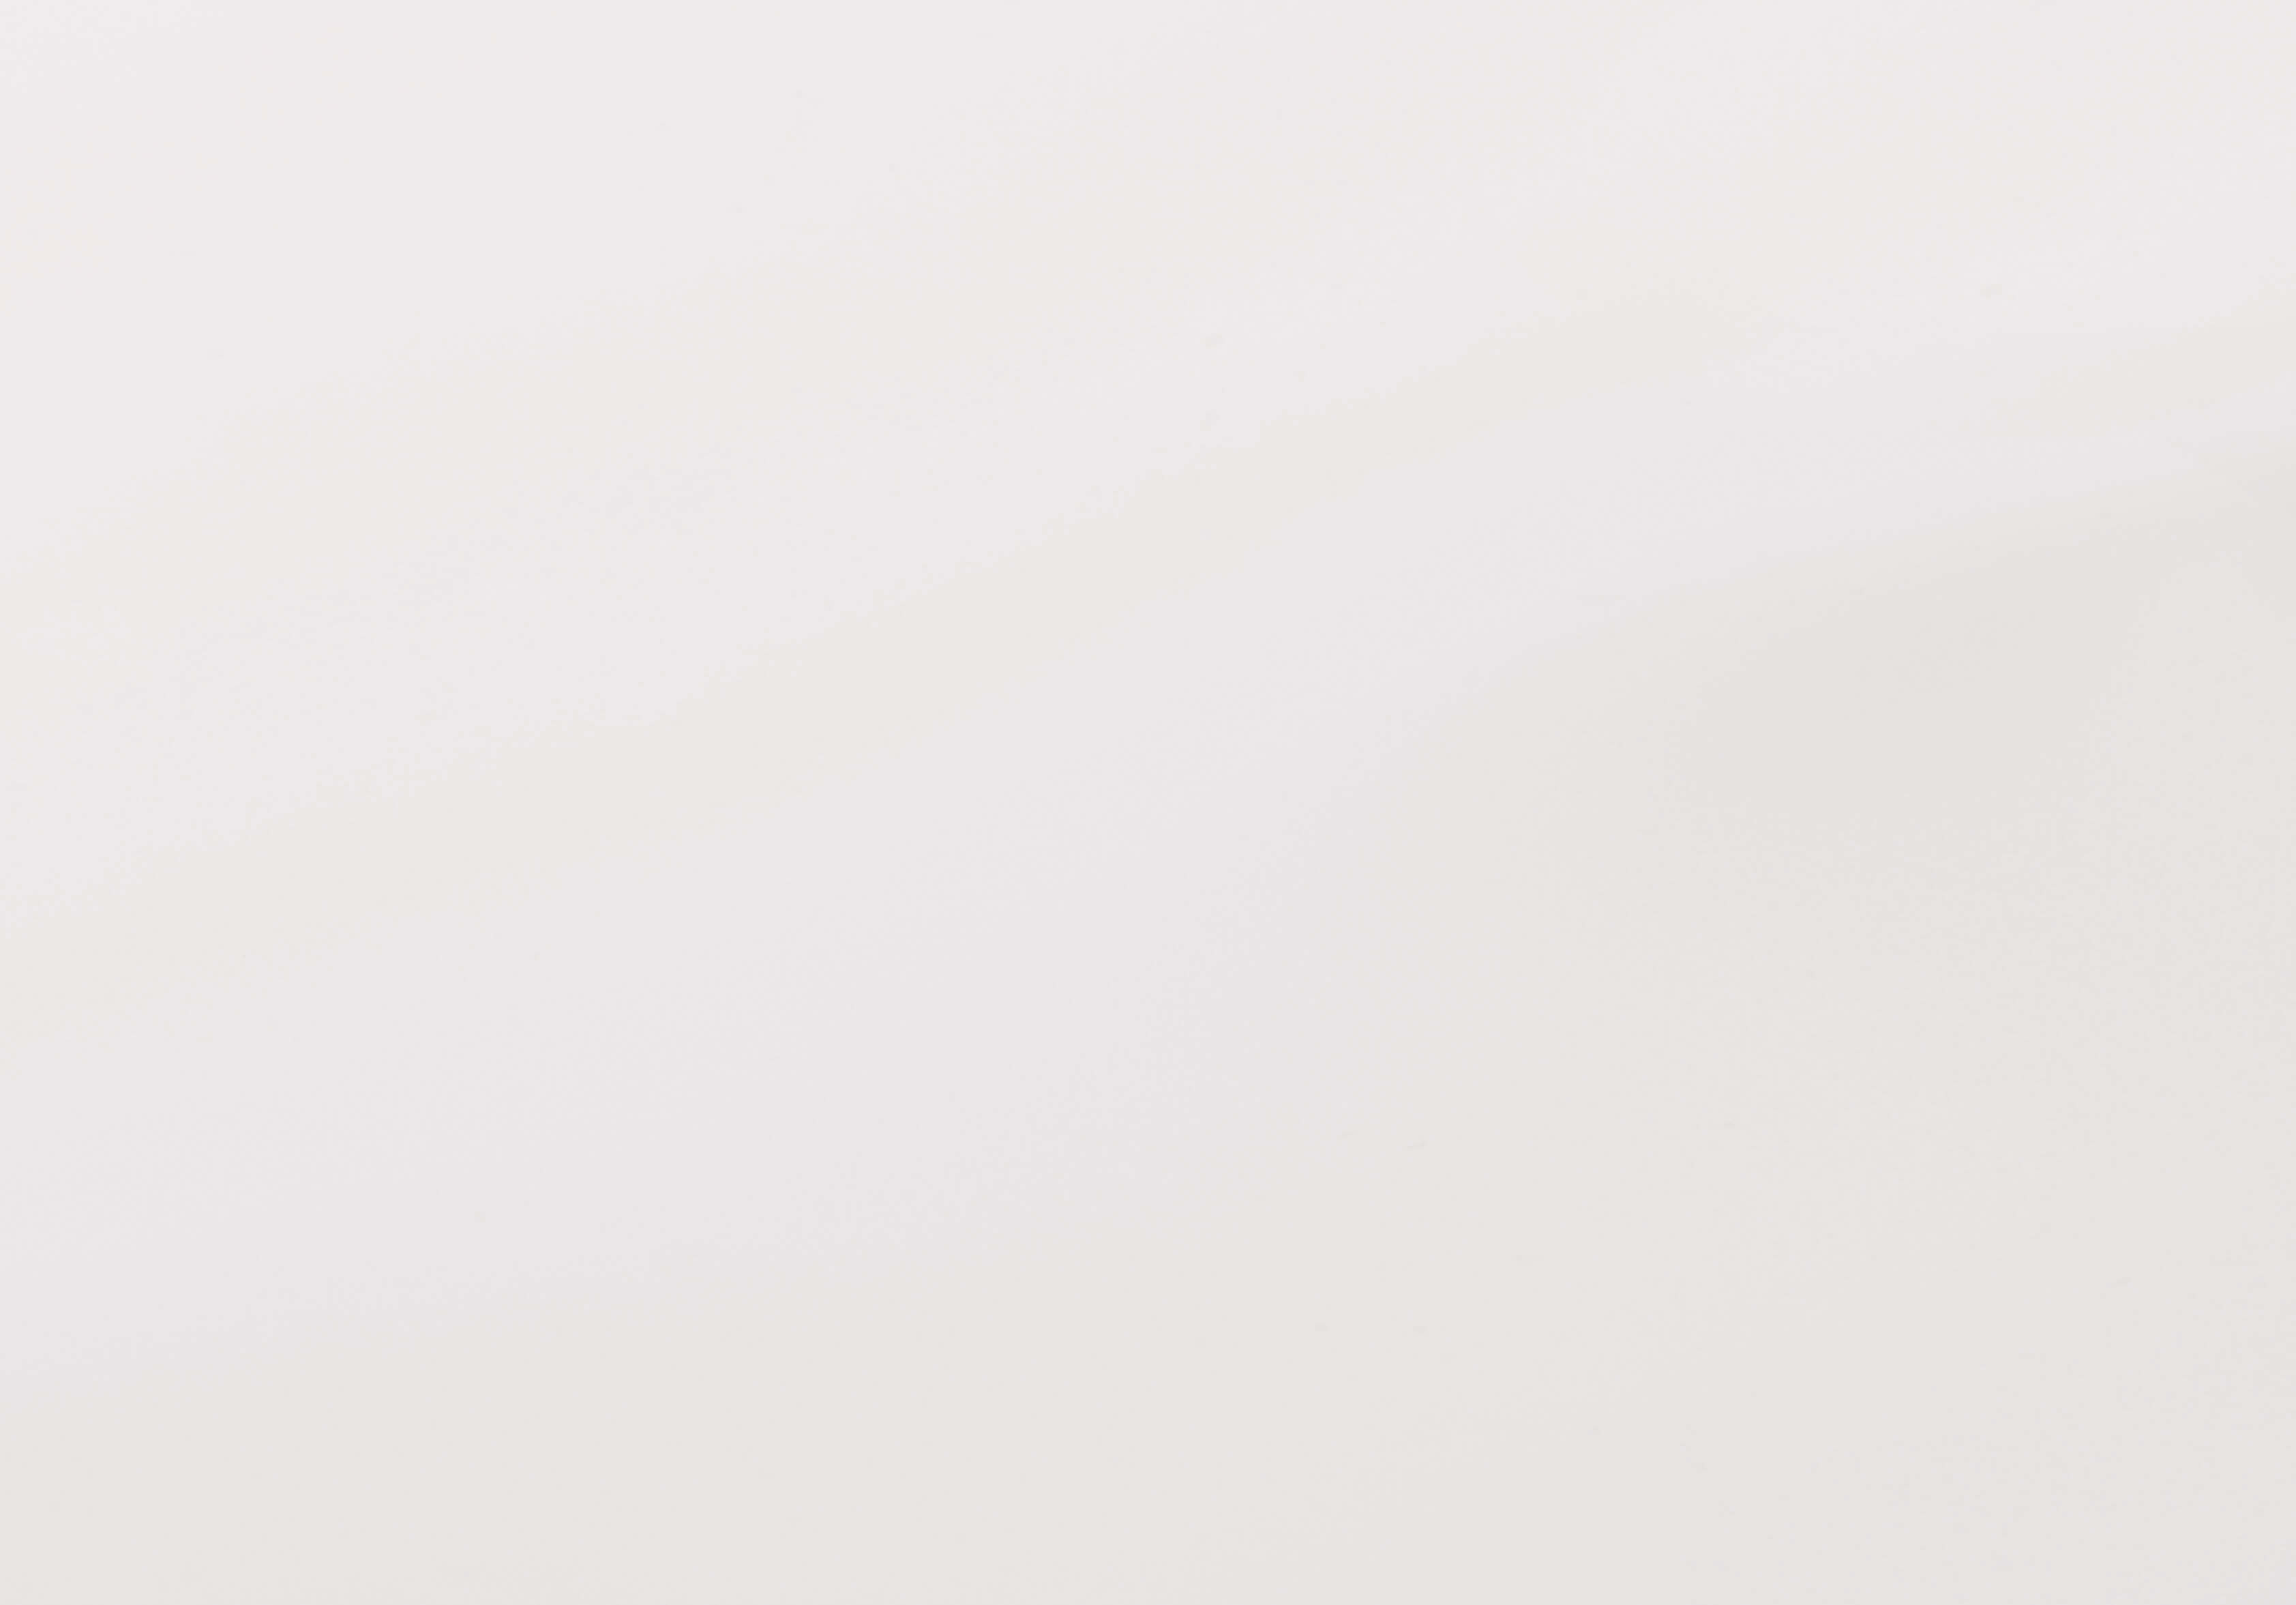 Vysokotlaký laminát Fénix Arpa - HPLF FENIX 0757 NTM – dekor BIANCO DOVER - JH jádro hnědé